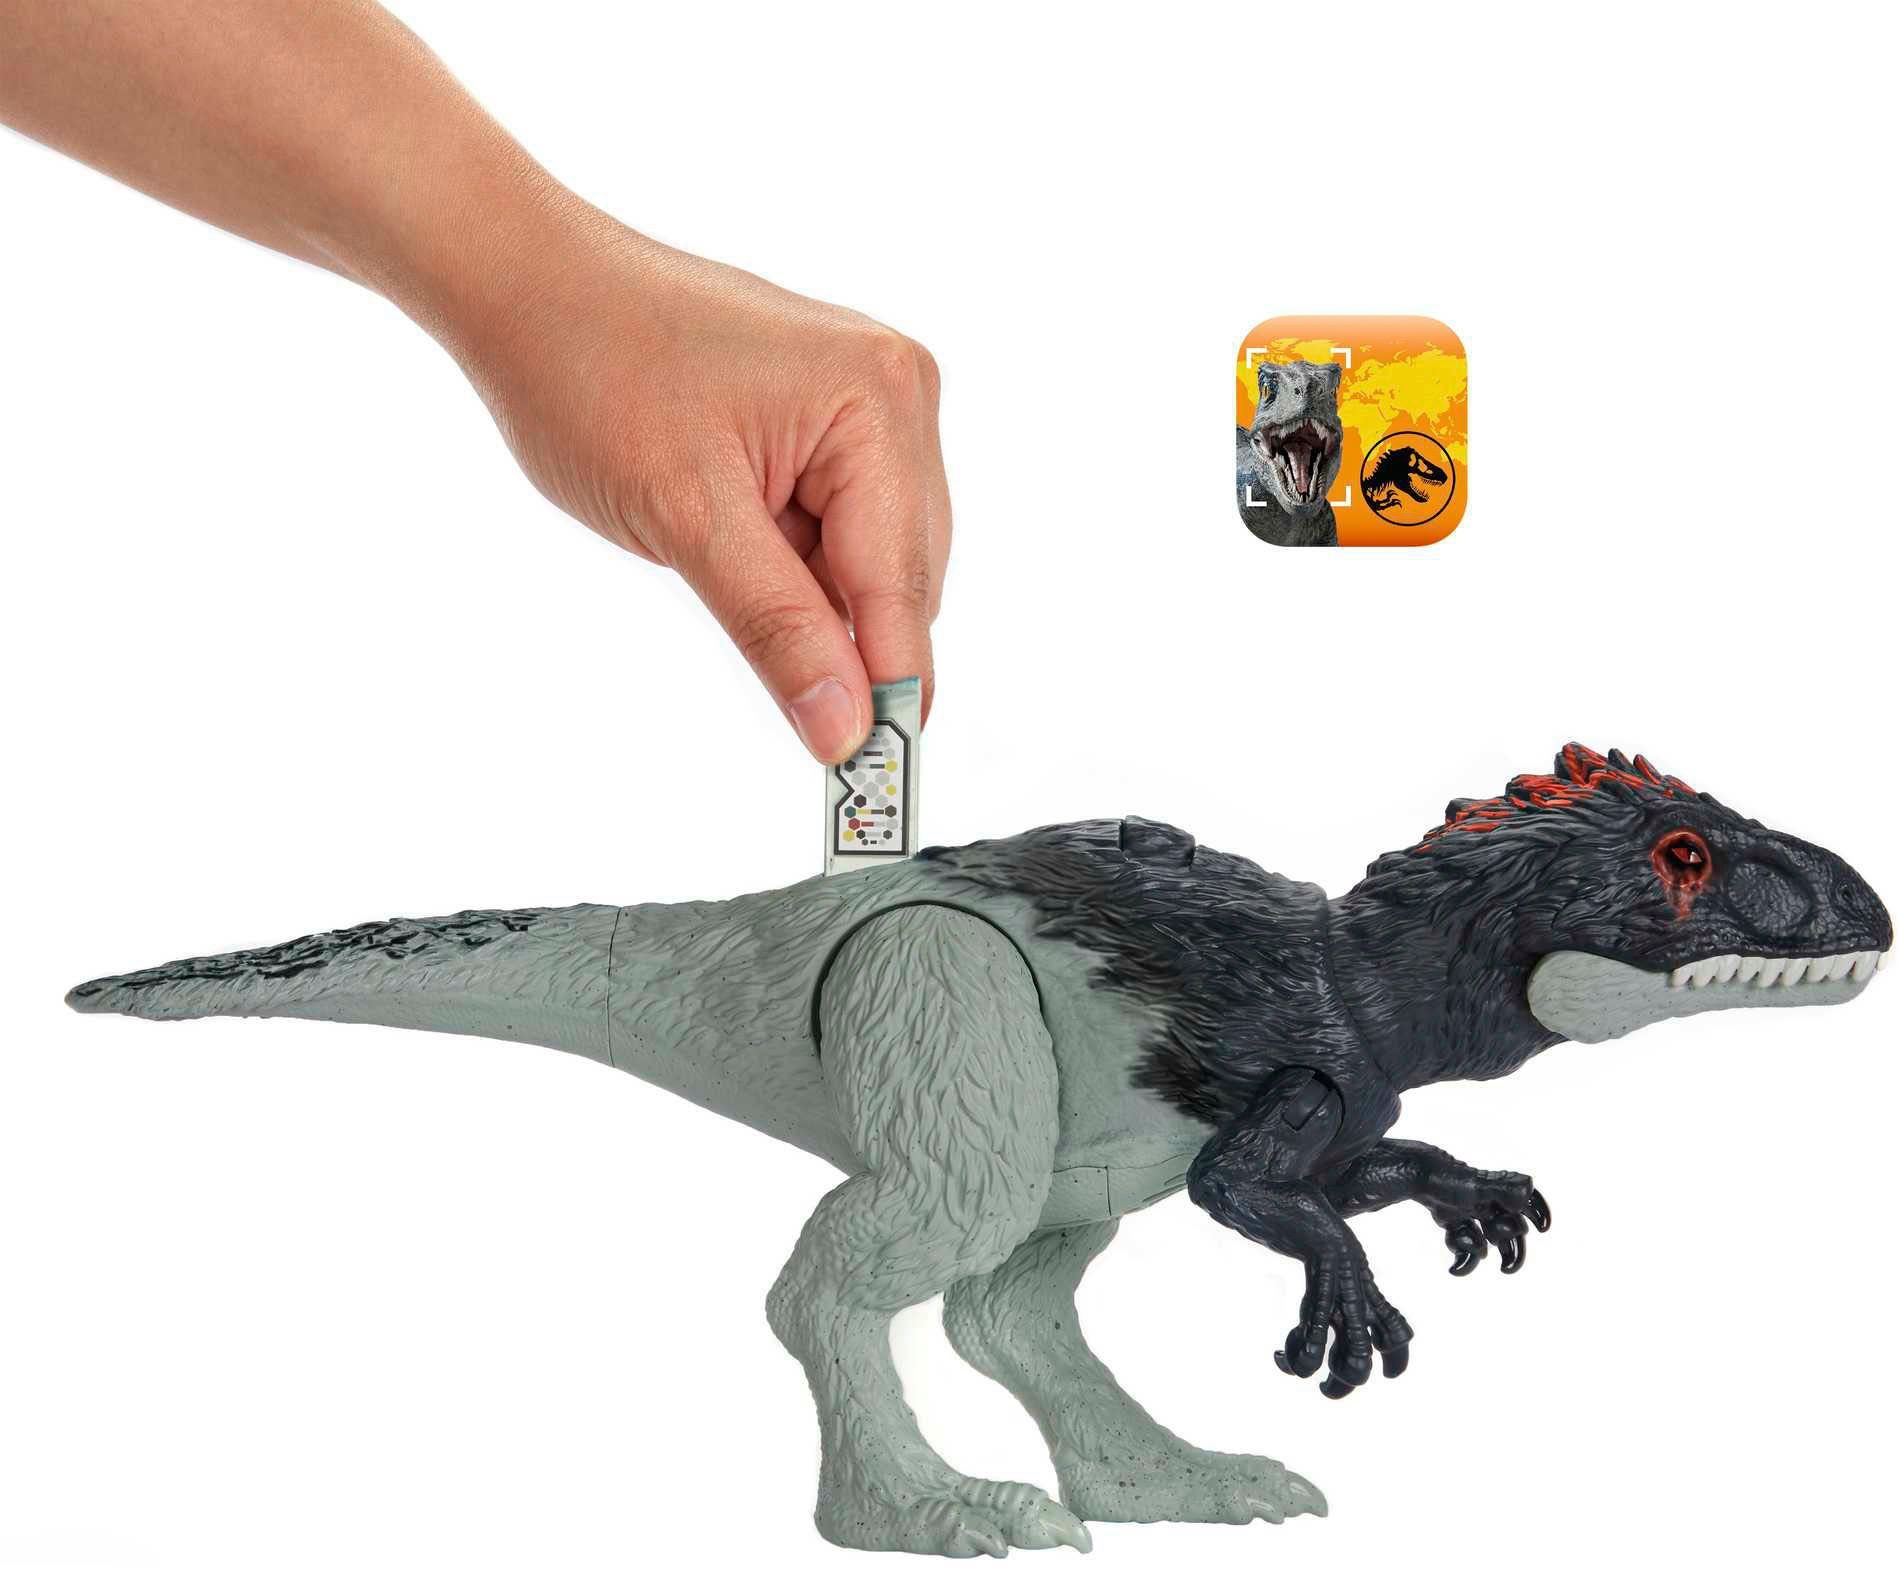 Eocarcharia - Wild Mattel® Jurassic Actionfigur World Roar